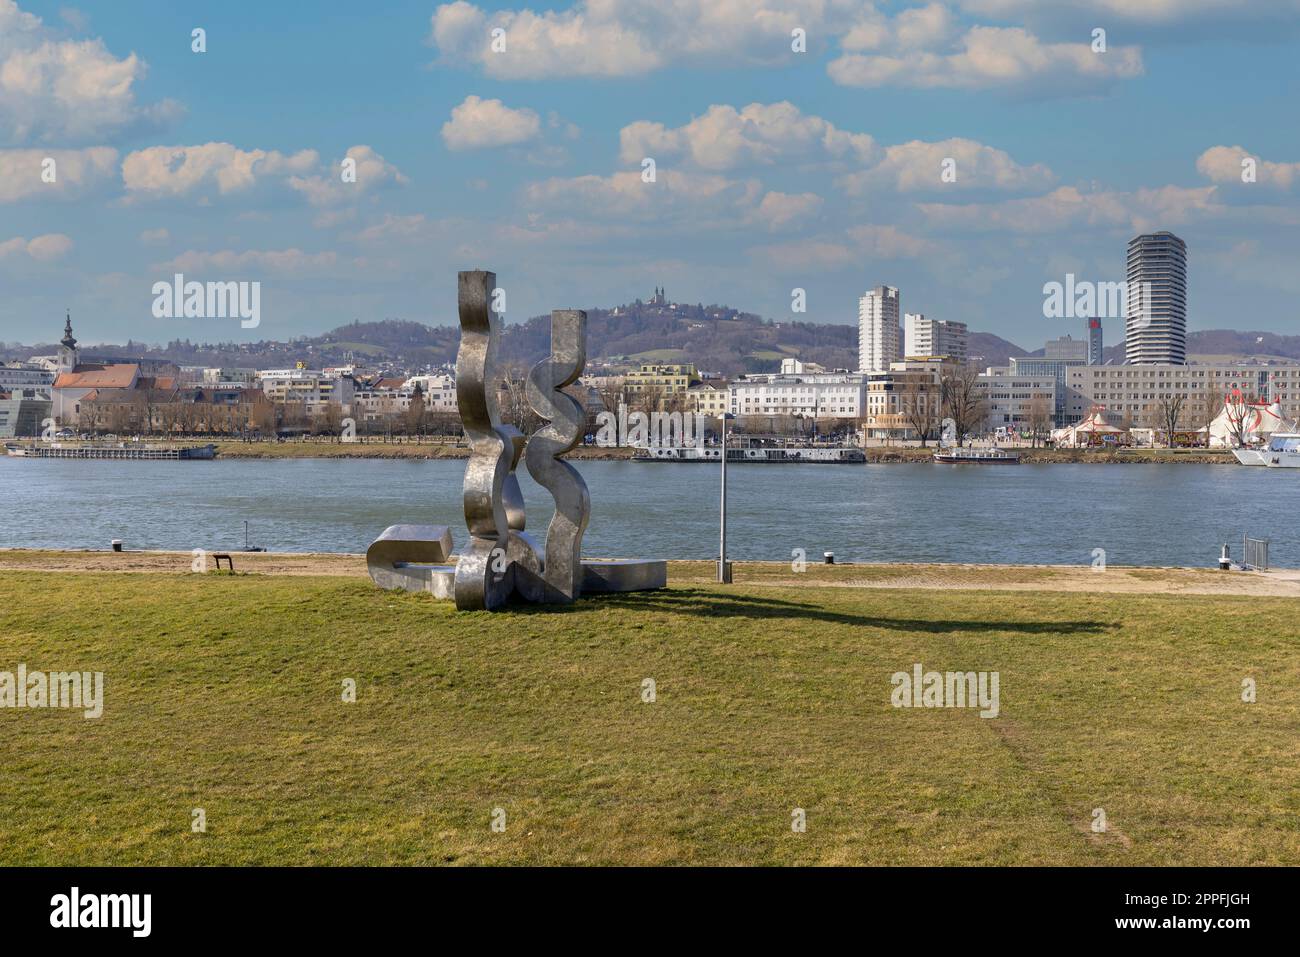 Vue du boulevard sur le Danube avec sculpture moderne en métal, forum metall, Linz, Autriche Banque D'Images